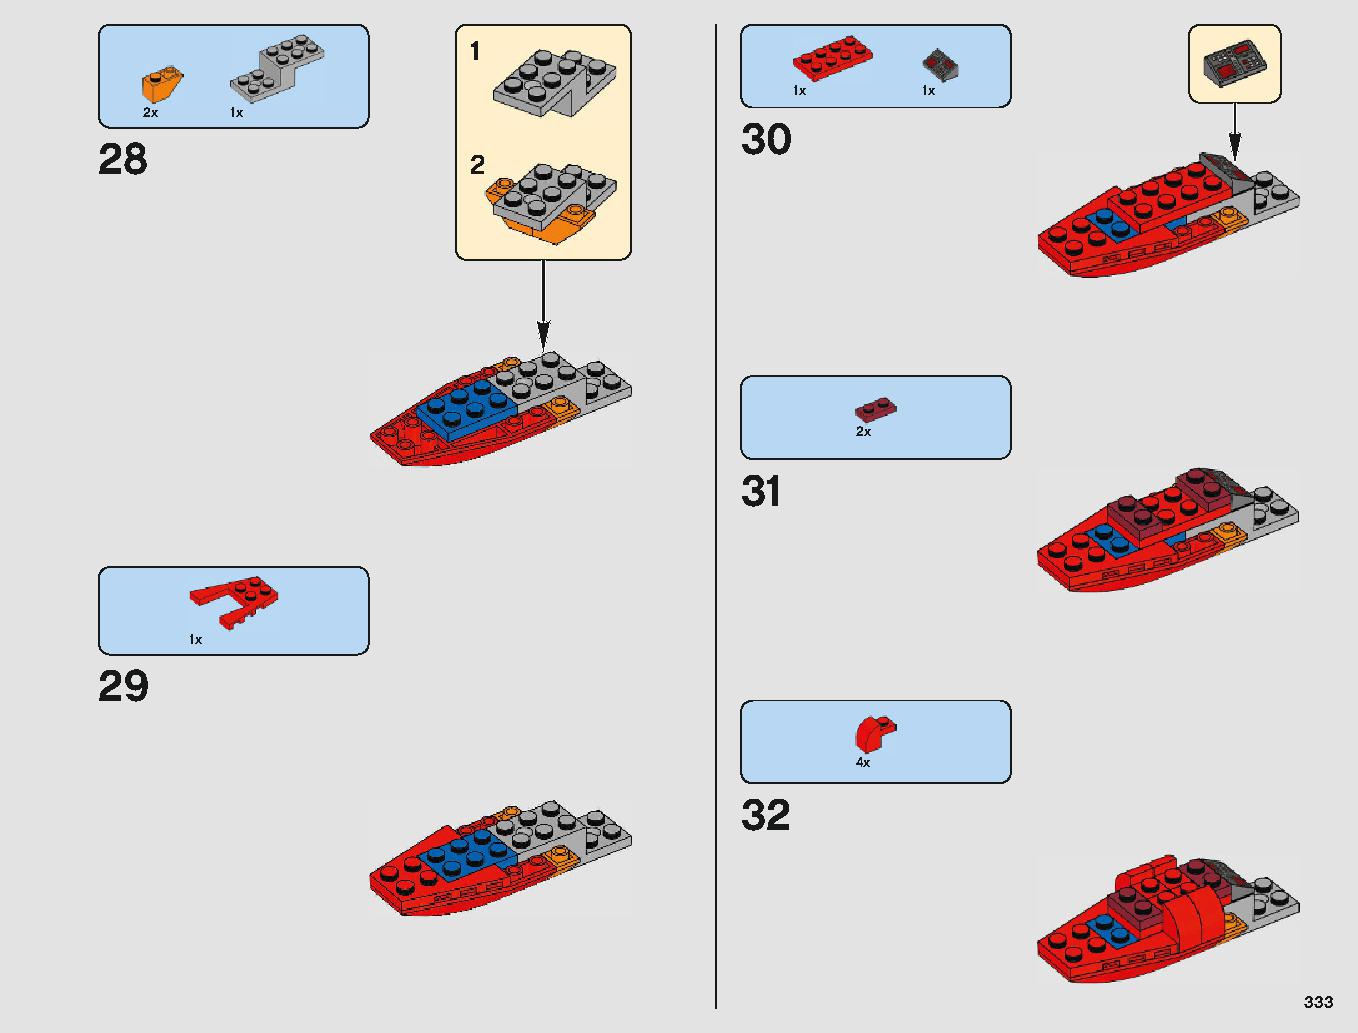 クラウド・シティ 75222 レゴの商品情報 レゴの説明書・組立方法 333 page